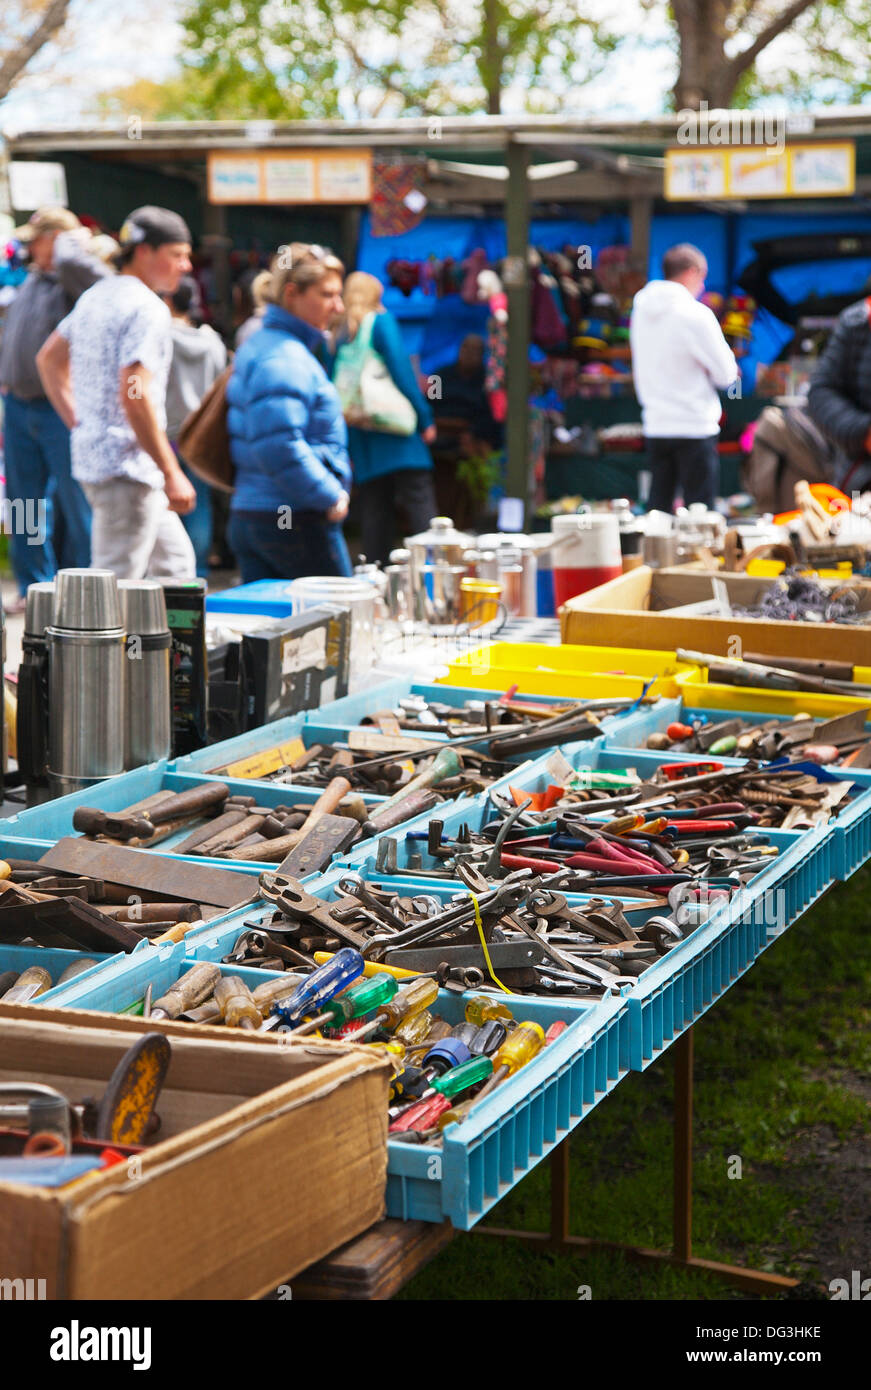 Persone che vagano bancarelle che vendono vari usati strumenti usati, apparecchi per uso domestico e bric-a-brac presso un mercato all'aperto. Foto Stock